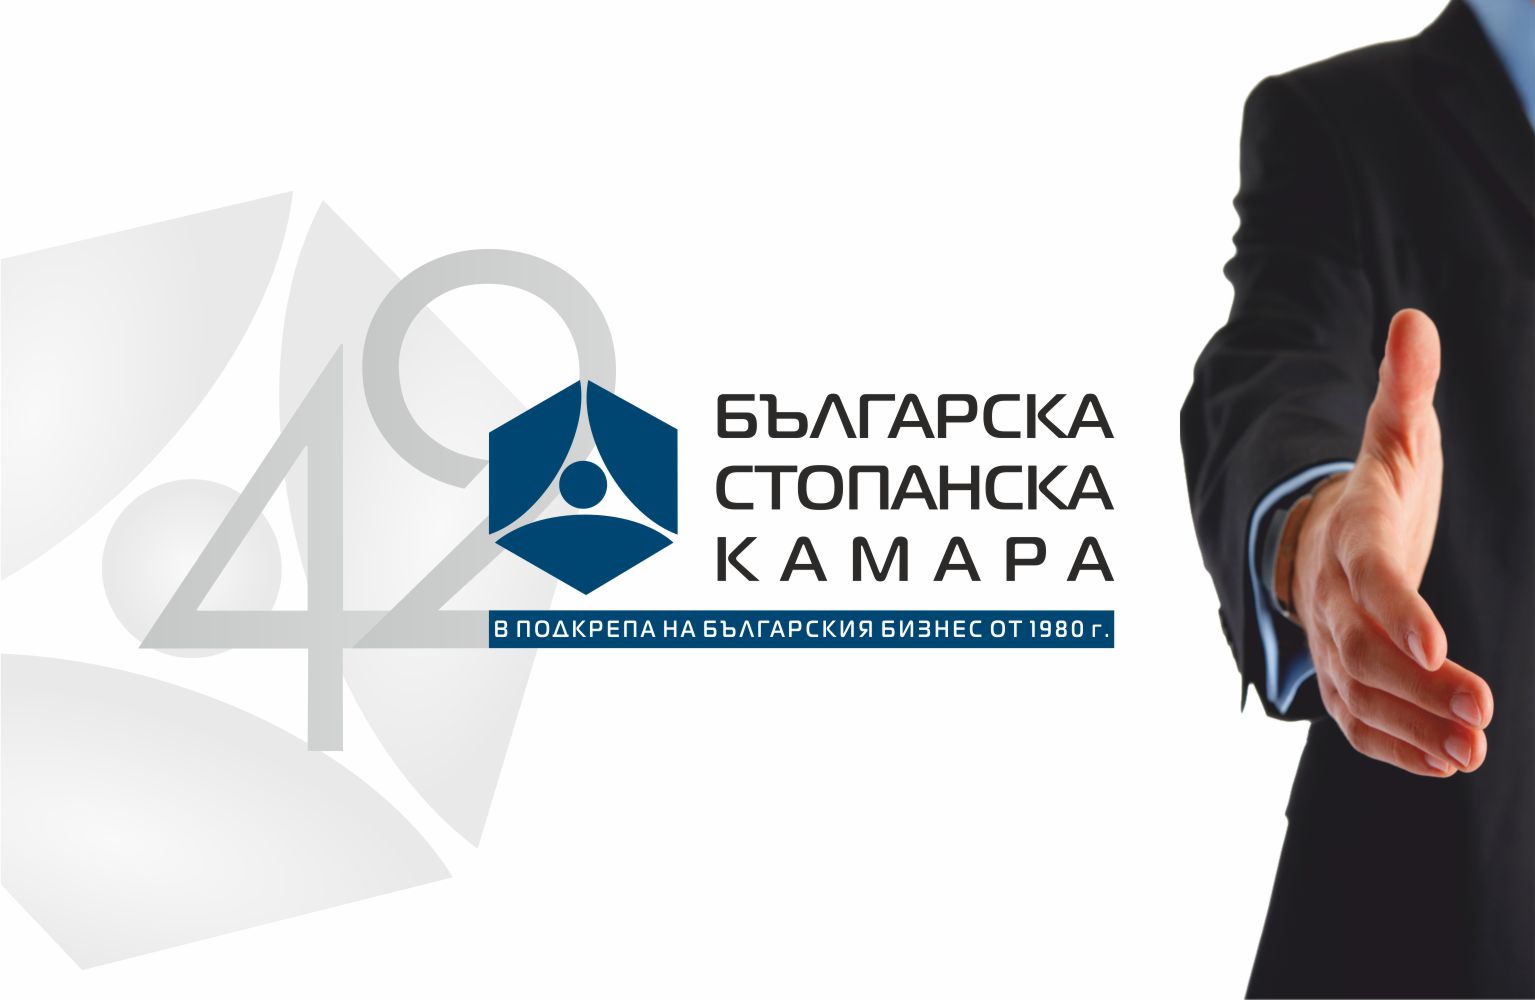 42 години ние подкрепяме българския бизнес